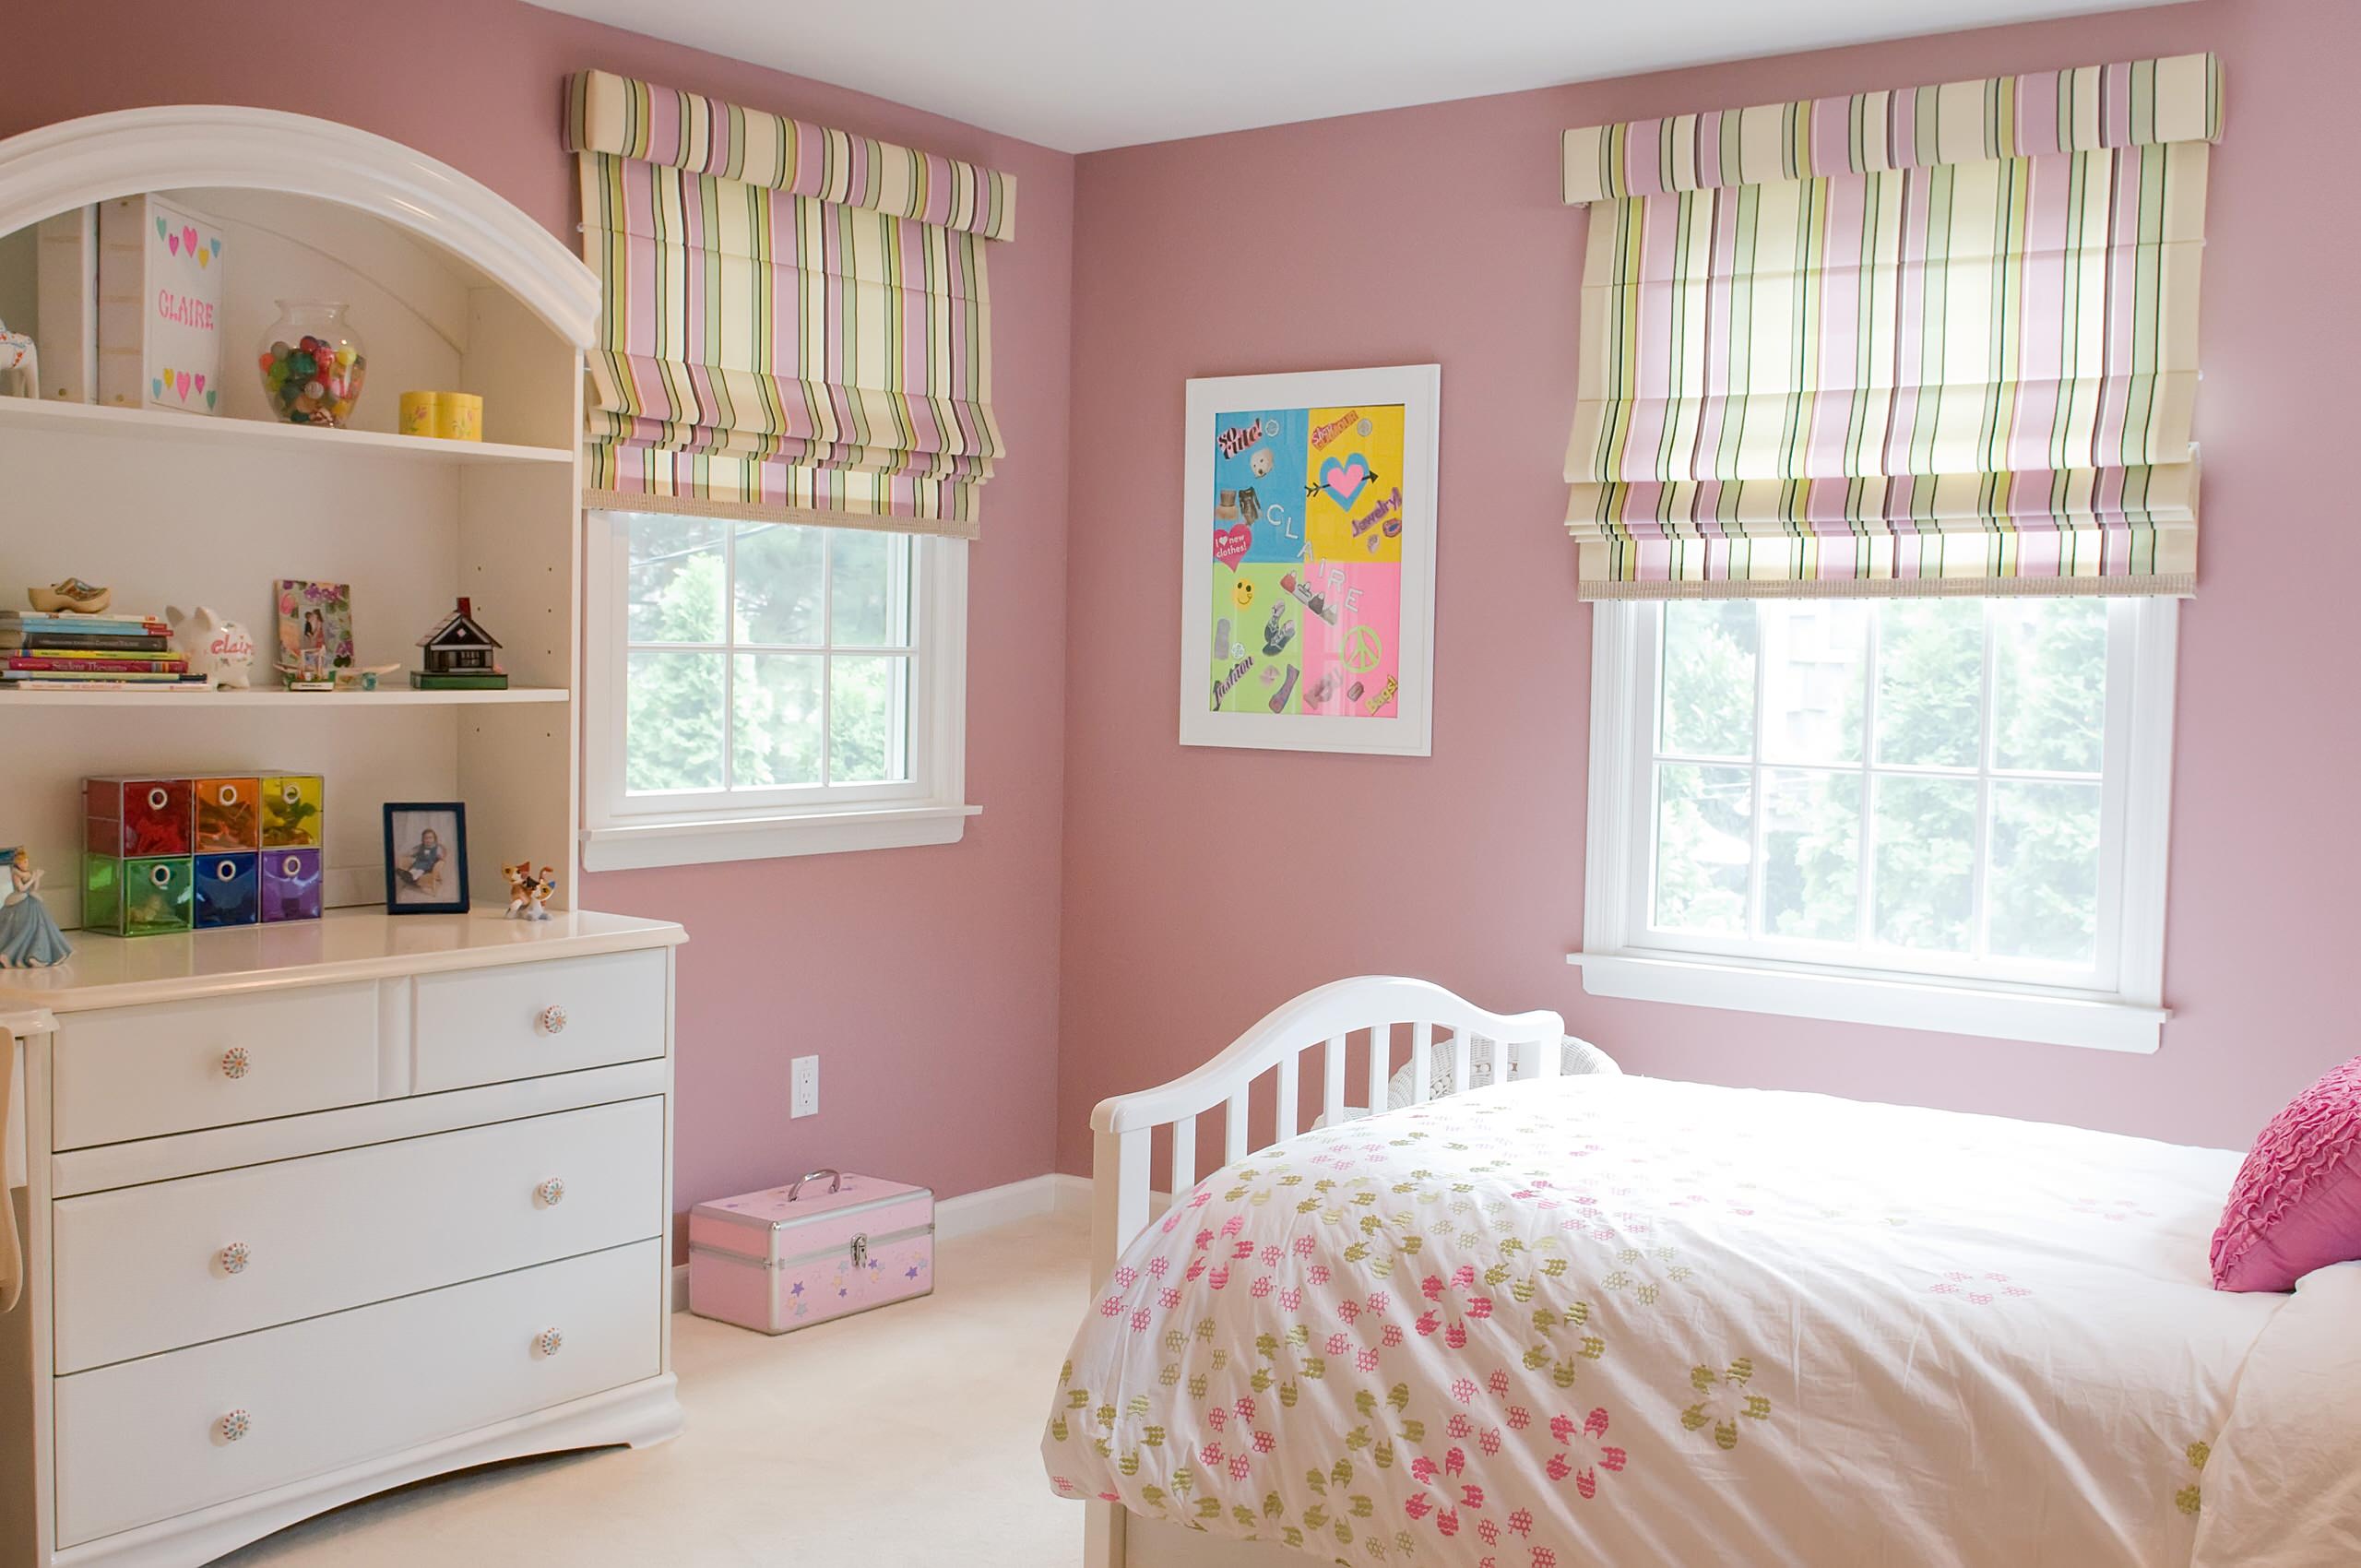 Teen Girl's Bedroom - Contemporary - Kids - New York - by Nanette Baker,  Interior Design Consultant | Houzz